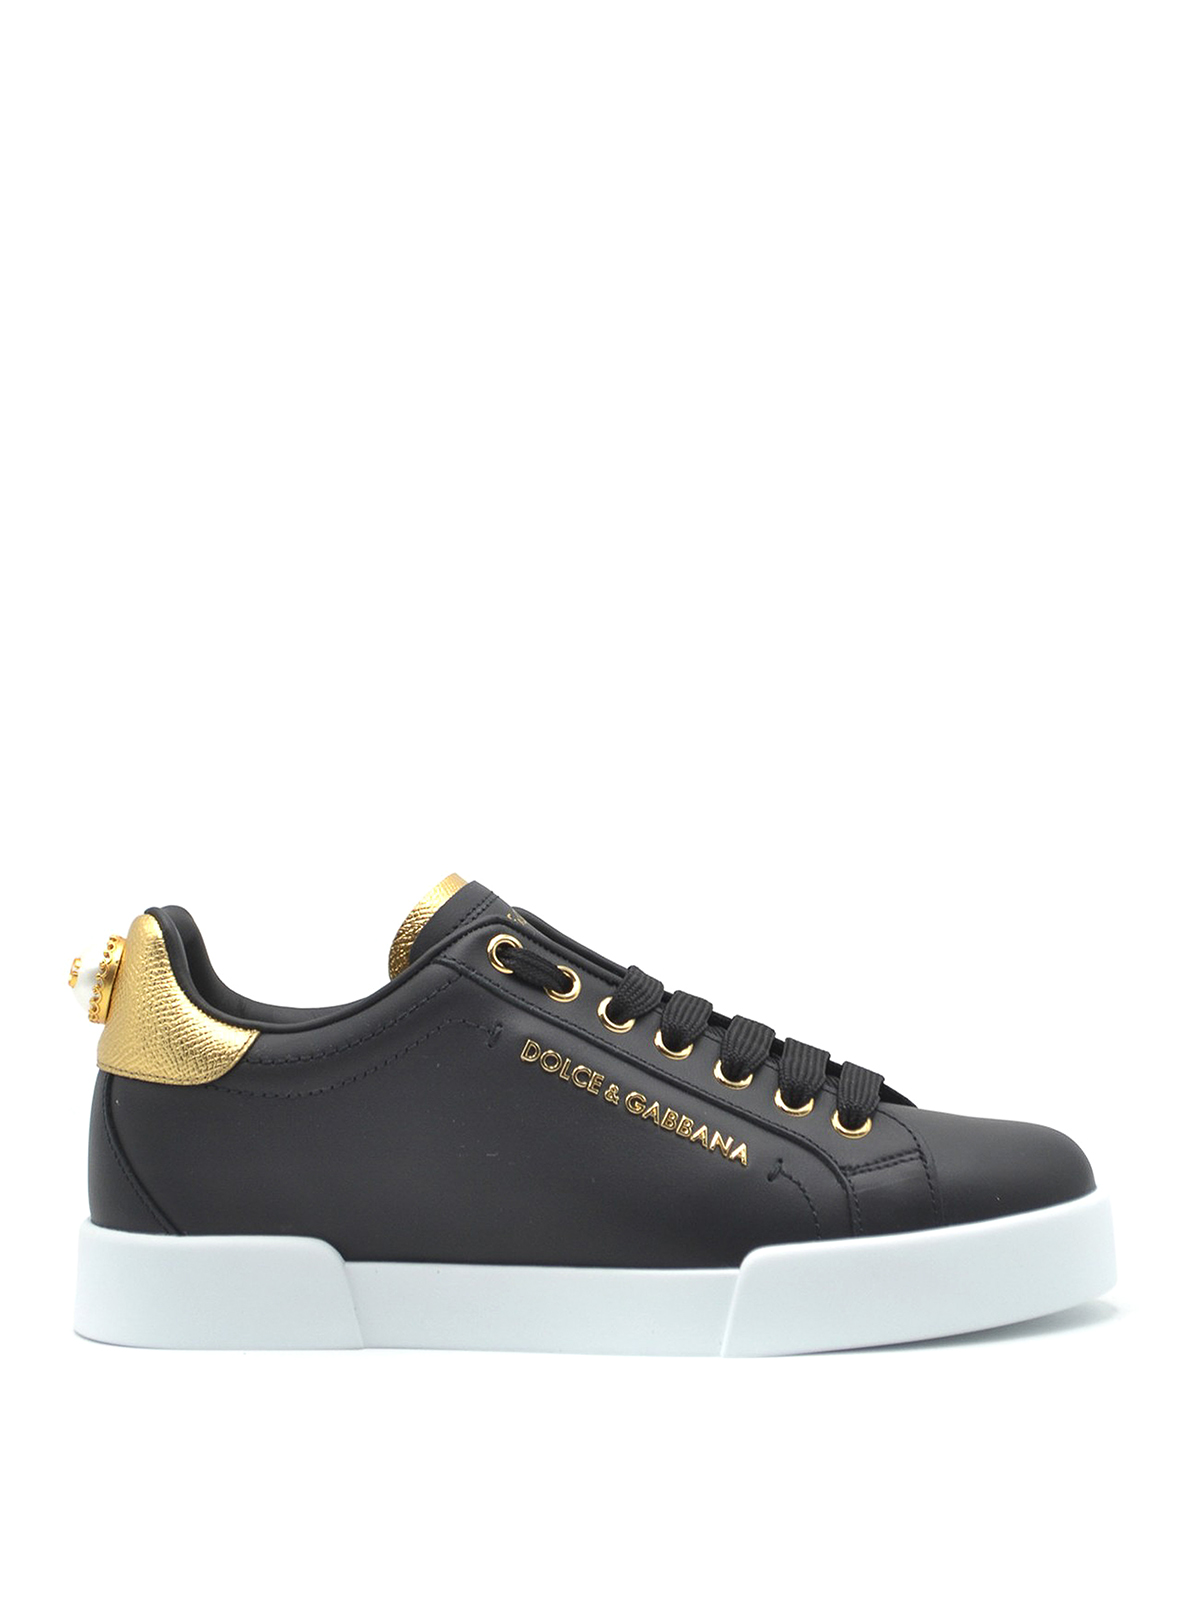 Shop Dolce & Gabbana Portofino Maxi Pearl Black Leather Sneakers